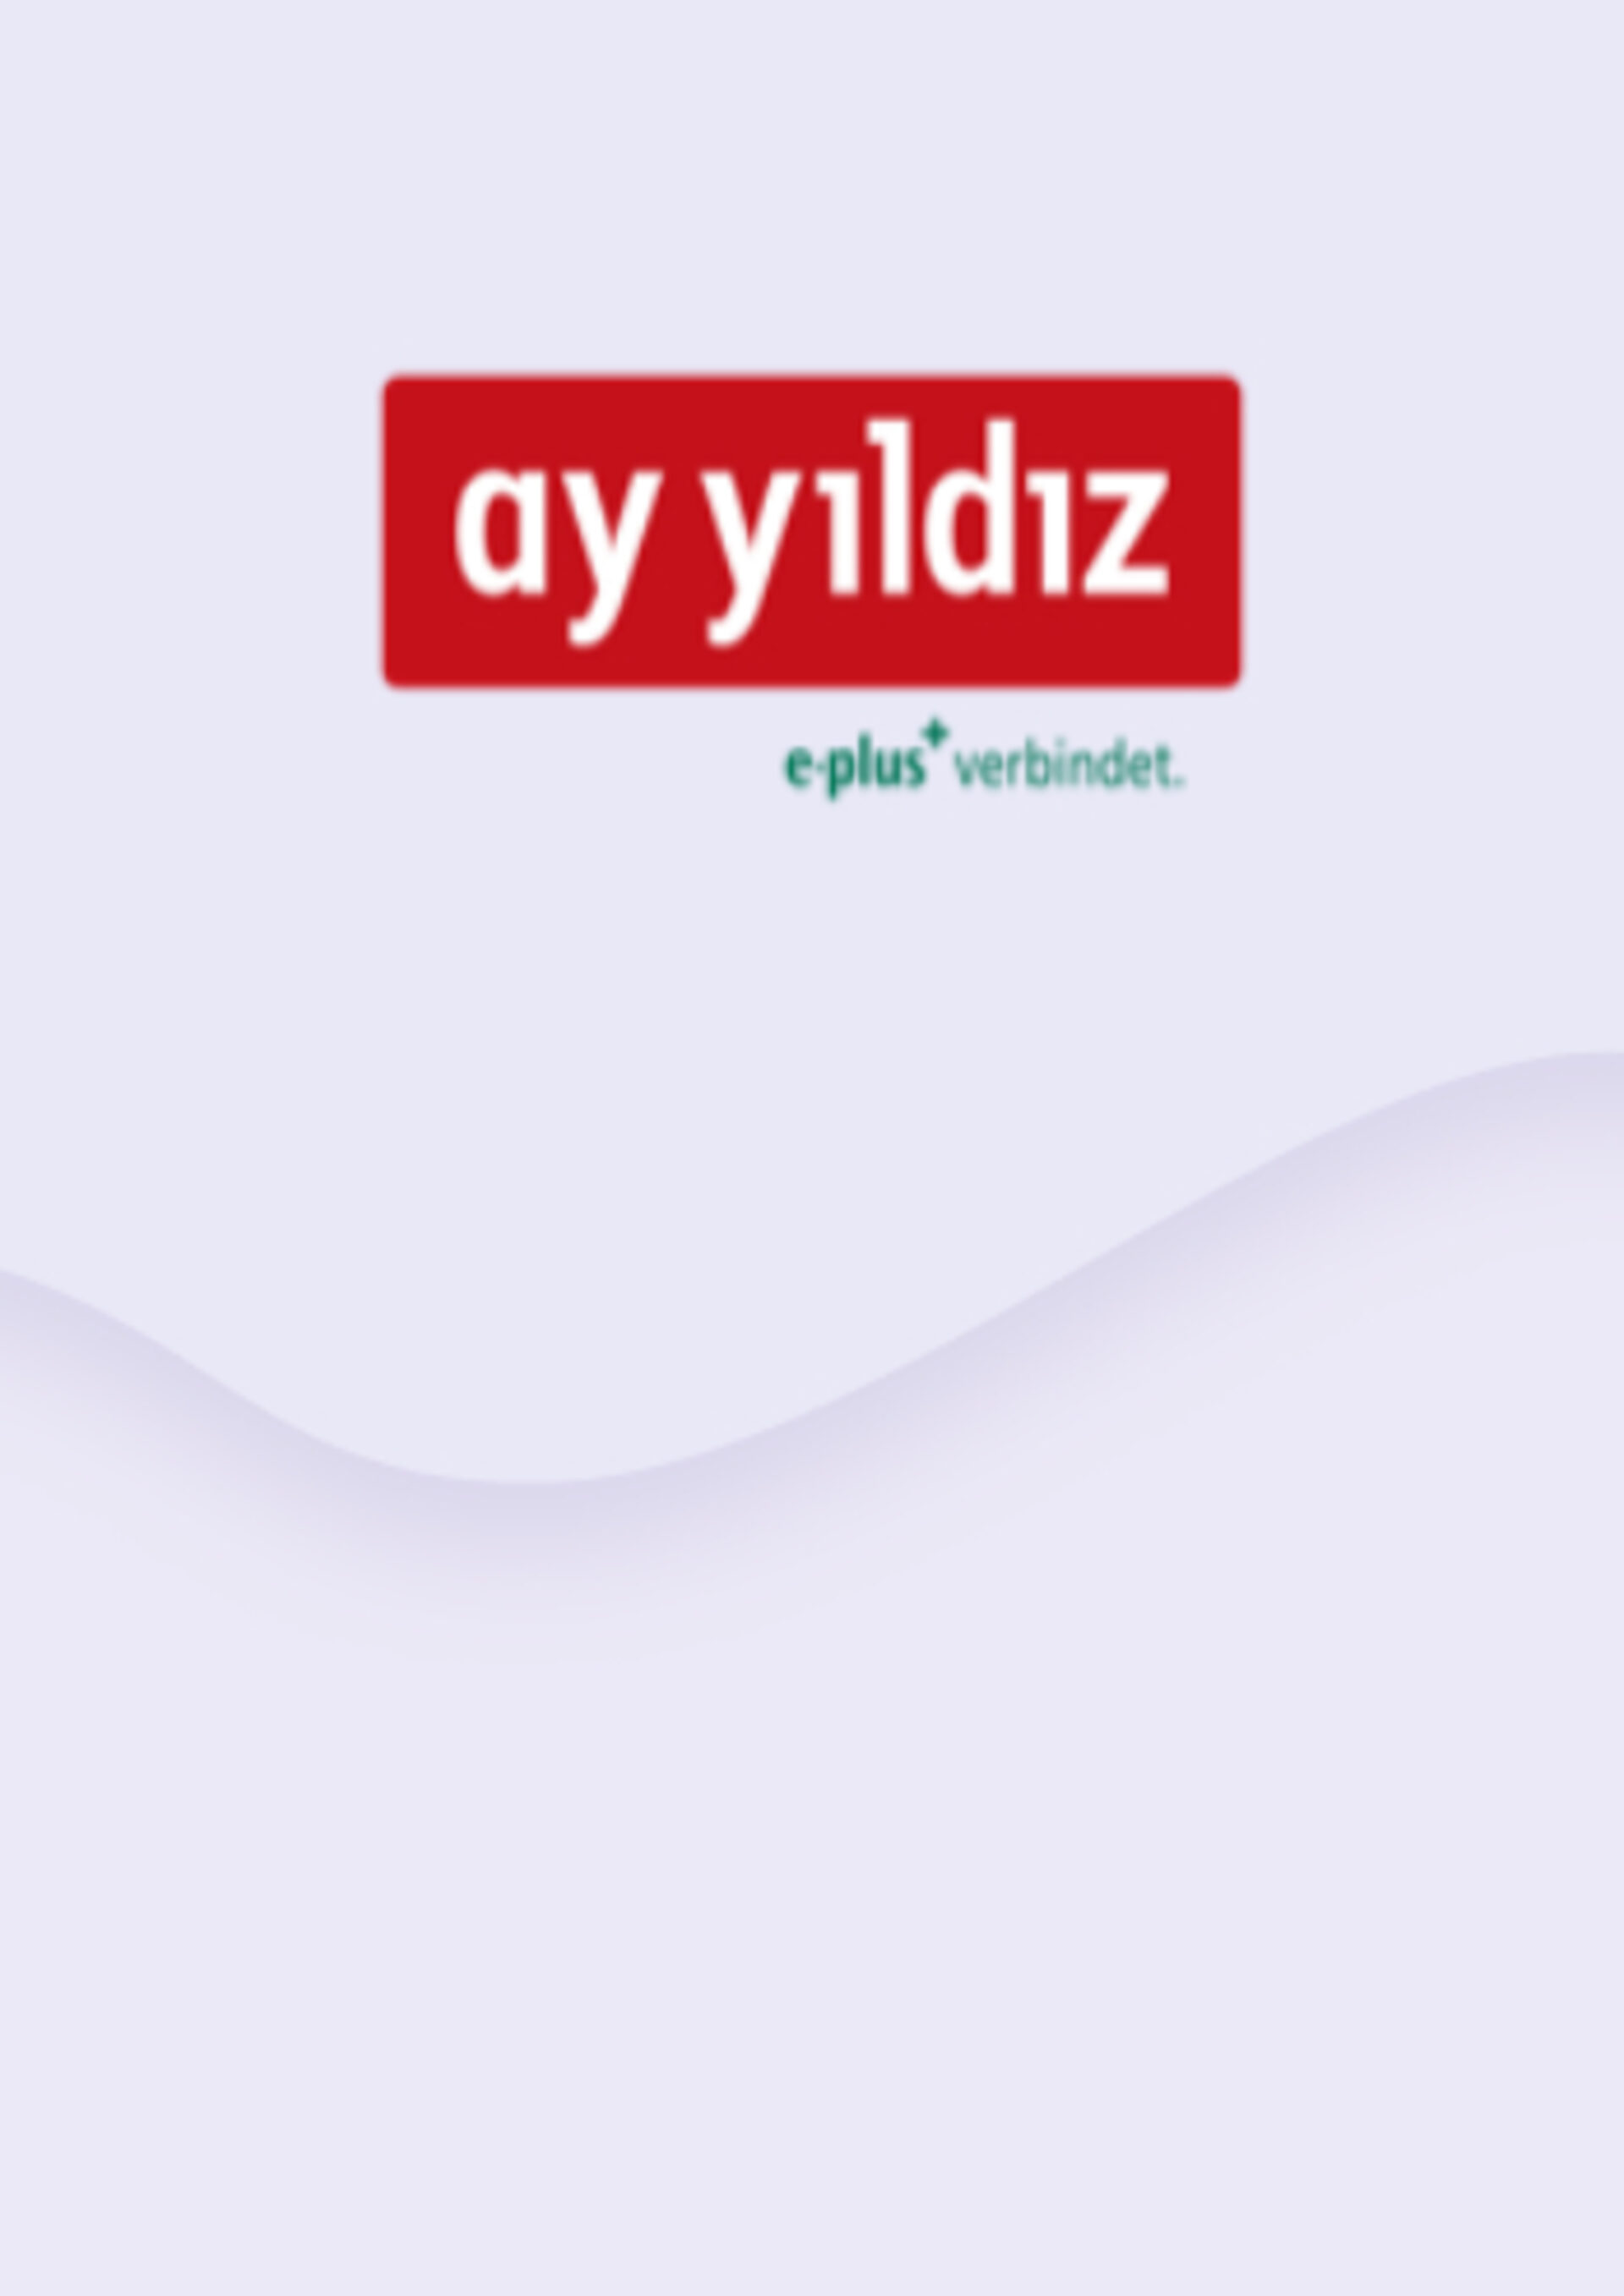 Schnell, einfach aufladen | Ay und Yildiz | ENEBA billig